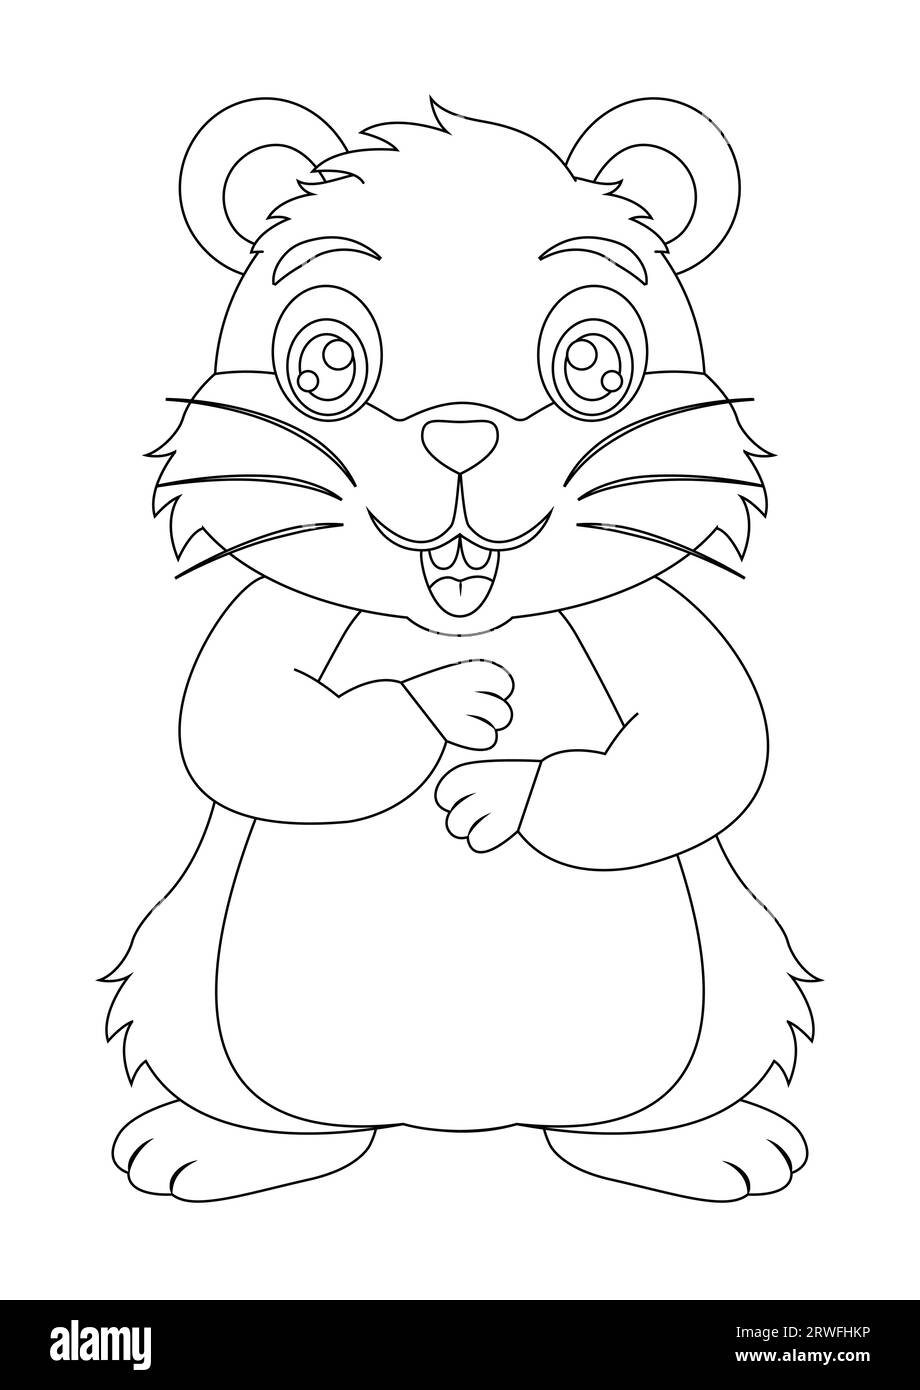 Schwarz-weiße süße Hamster-Zeichentrickfigur Vektor-Illustration. Malseite der Karikatur süßer lächelnder Hamster Stock Vektor